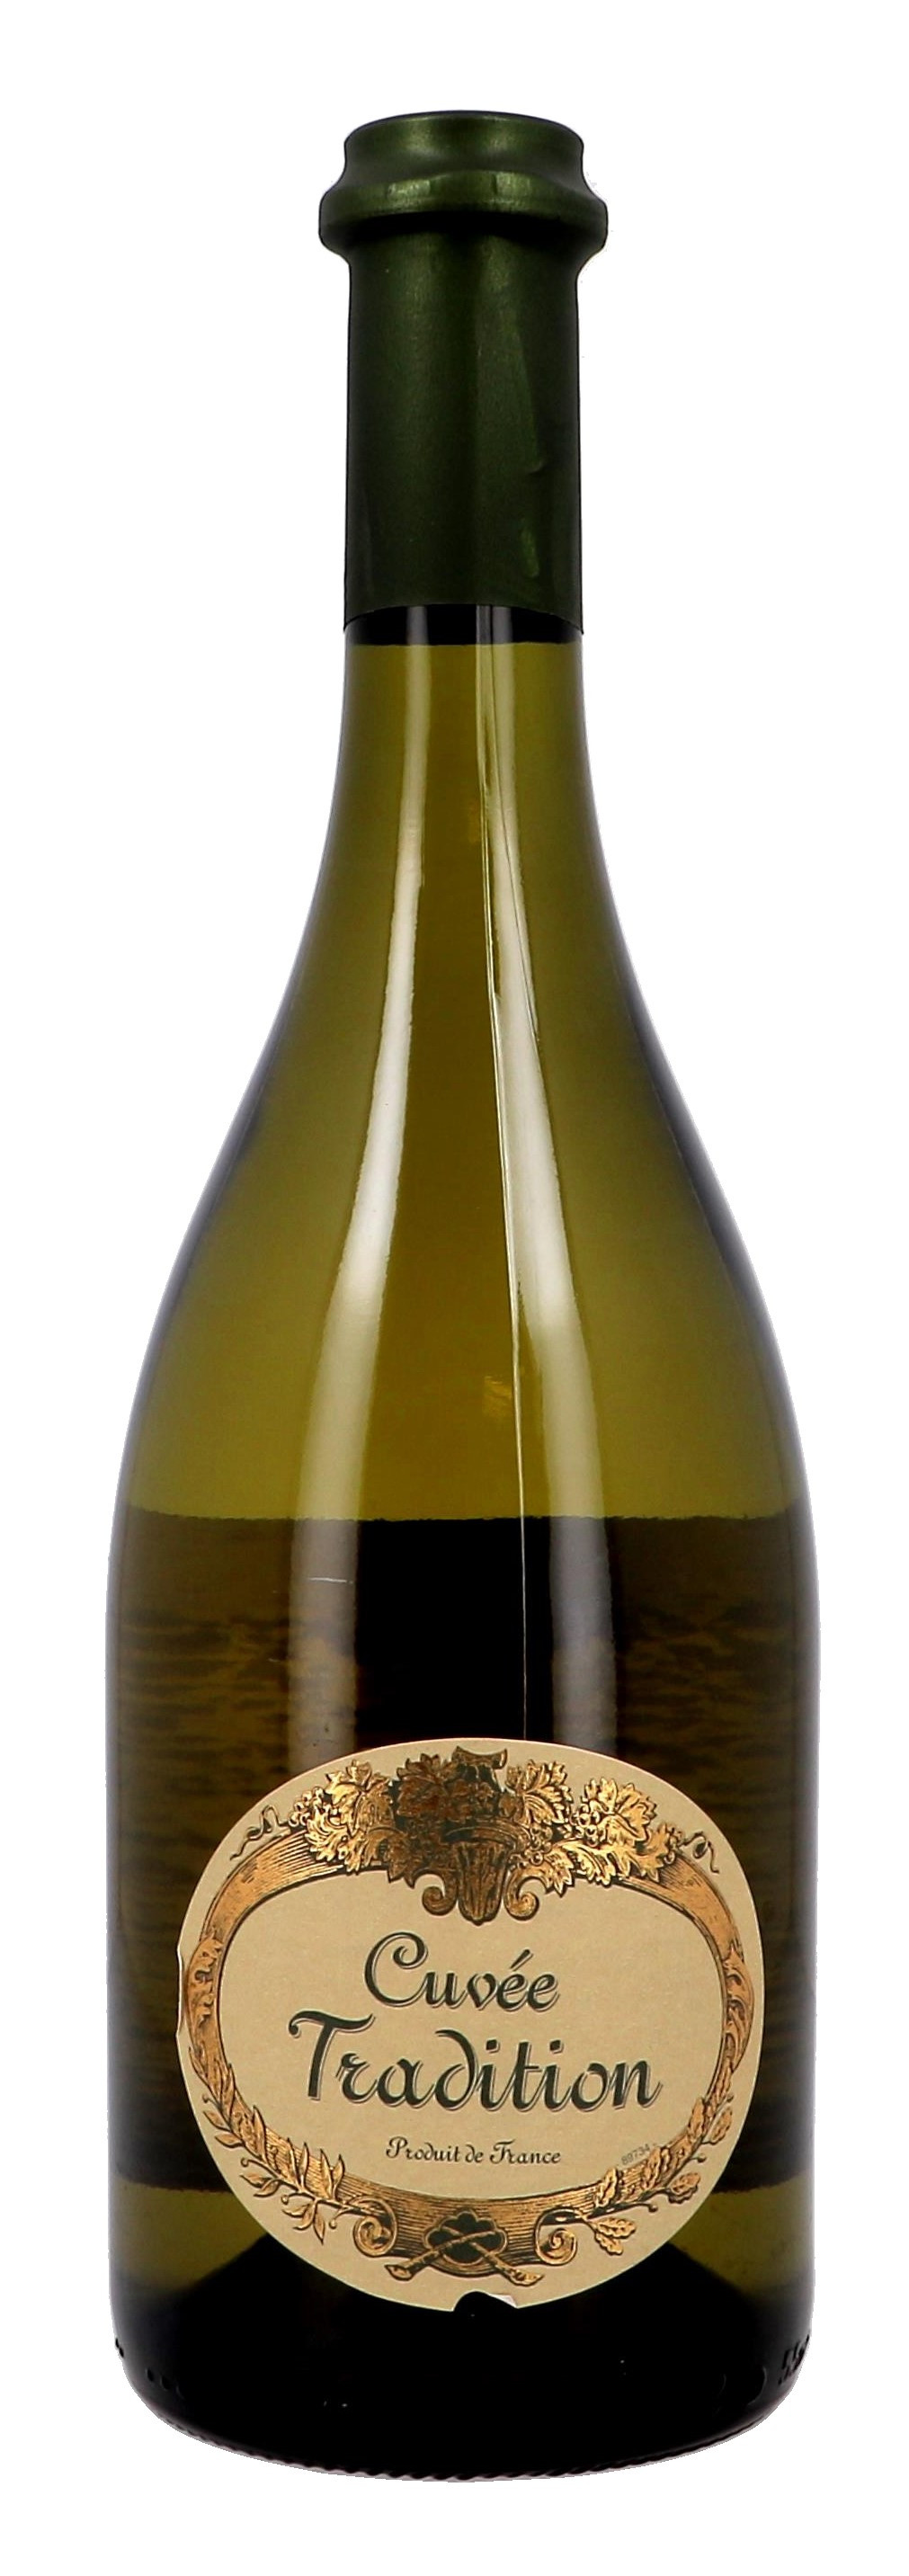 Cuvée Tradition Boisset blanc 75cl Vin de Pays de l'Herault (Wijnen)